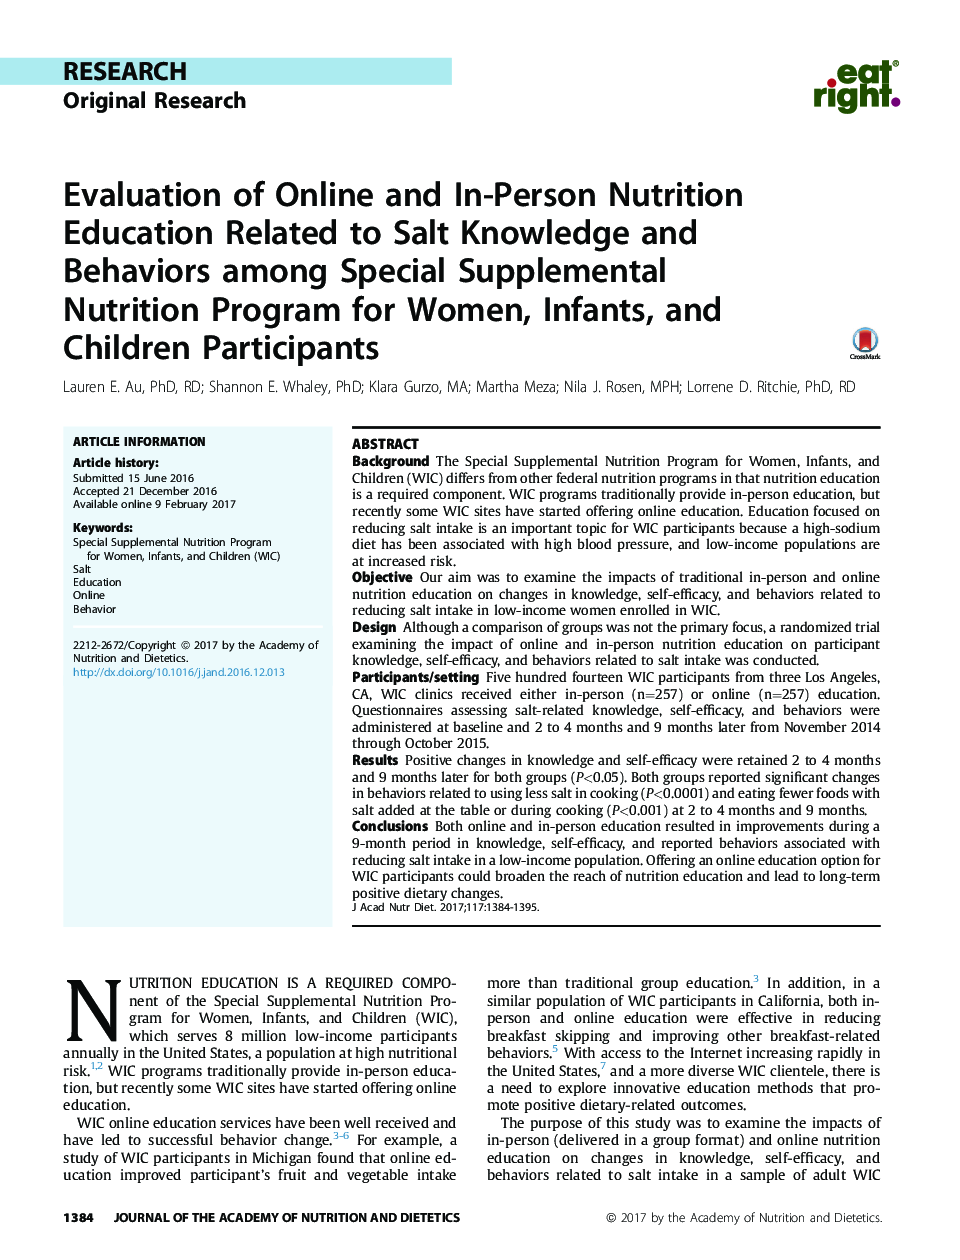 ارزیابی آموزش تغذیه آنلاین و فردی مربوط به دانش و رفتار نمک در میان برنامه های تغذیه ای ویژه برای زنان، نوزادان و شرکت کنندگان کودکان 